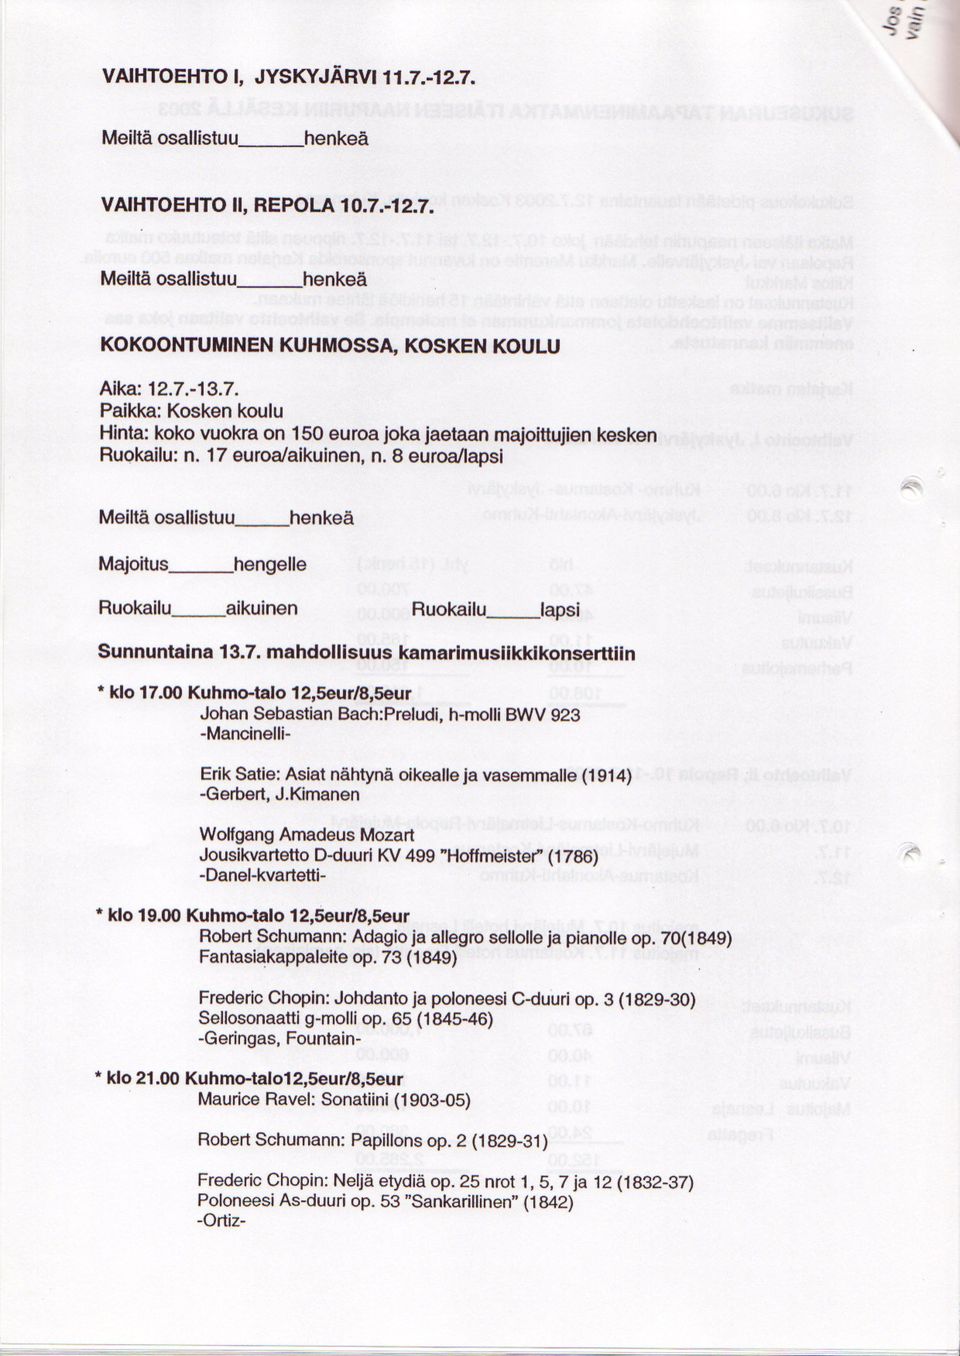 00 Kuhmetalo 12,5aur/8,5our Roborl Schumann: Adagio ia allagro sellolle ja piano op. 70(1949) Fantasiakappalglte op. 73 (1849) * klo 21.